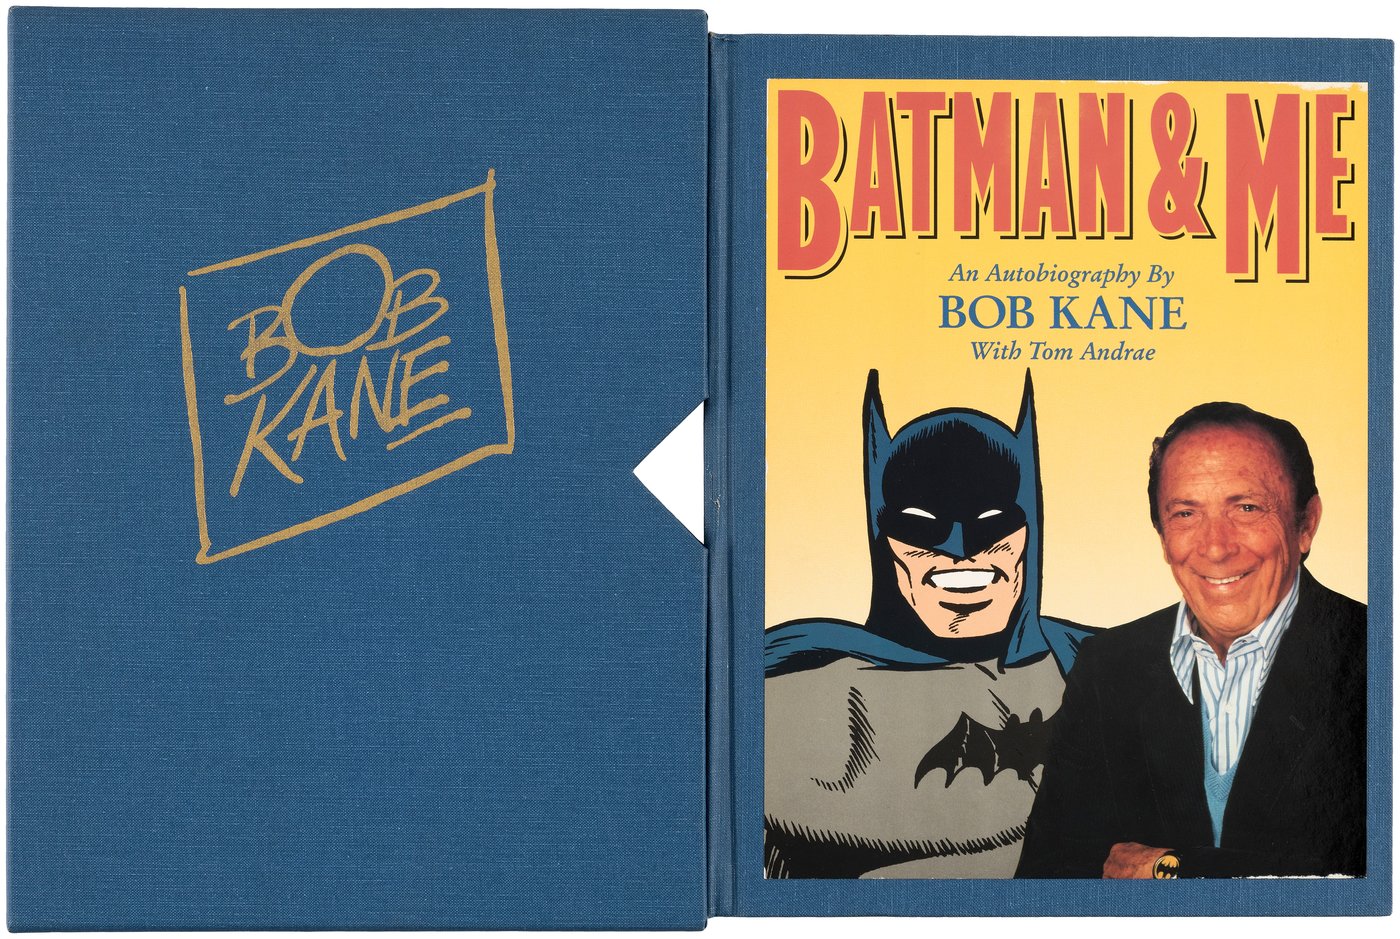 BOB KANE "BATMAN AND ME" 